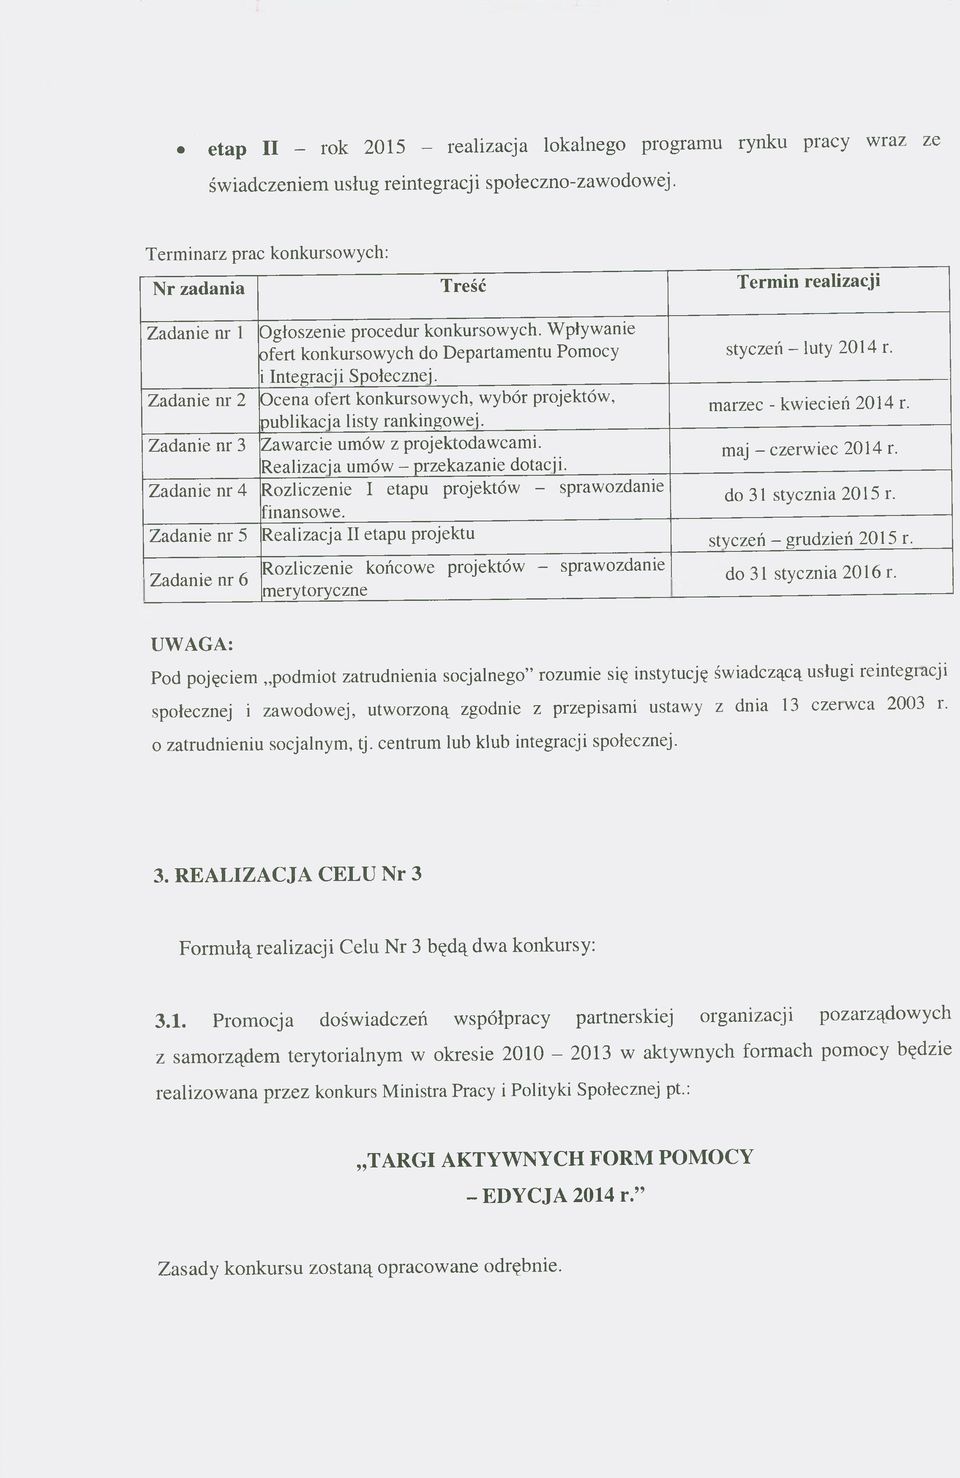 marzec - kwiecień 2014 r. Zadanie nr 3 Zawarcie umów z projektodawcami. Realizacja umów - przekazanie dotacji. maj - czerwiec 2014 r.